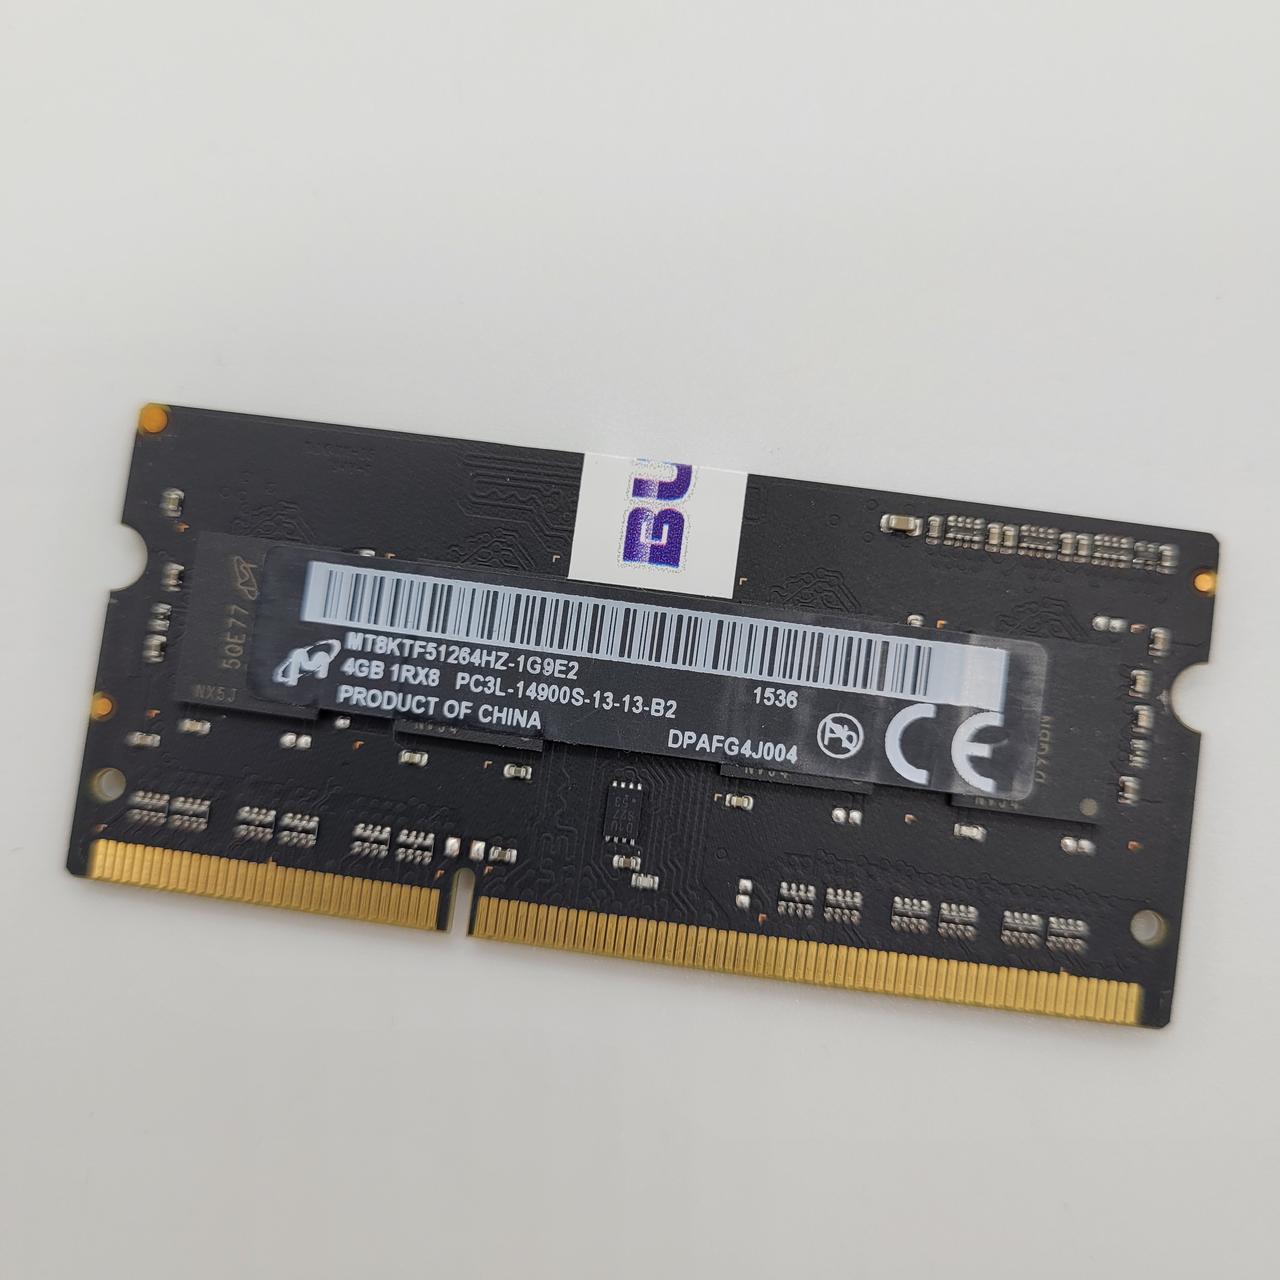 Оперативна пам'ять для ноутбука Micron SODIMM DDR3L 4Gb 1866MHz 14900s CL13 (MT8KTF51264HZ-1G9E2) Б/В, фото 1